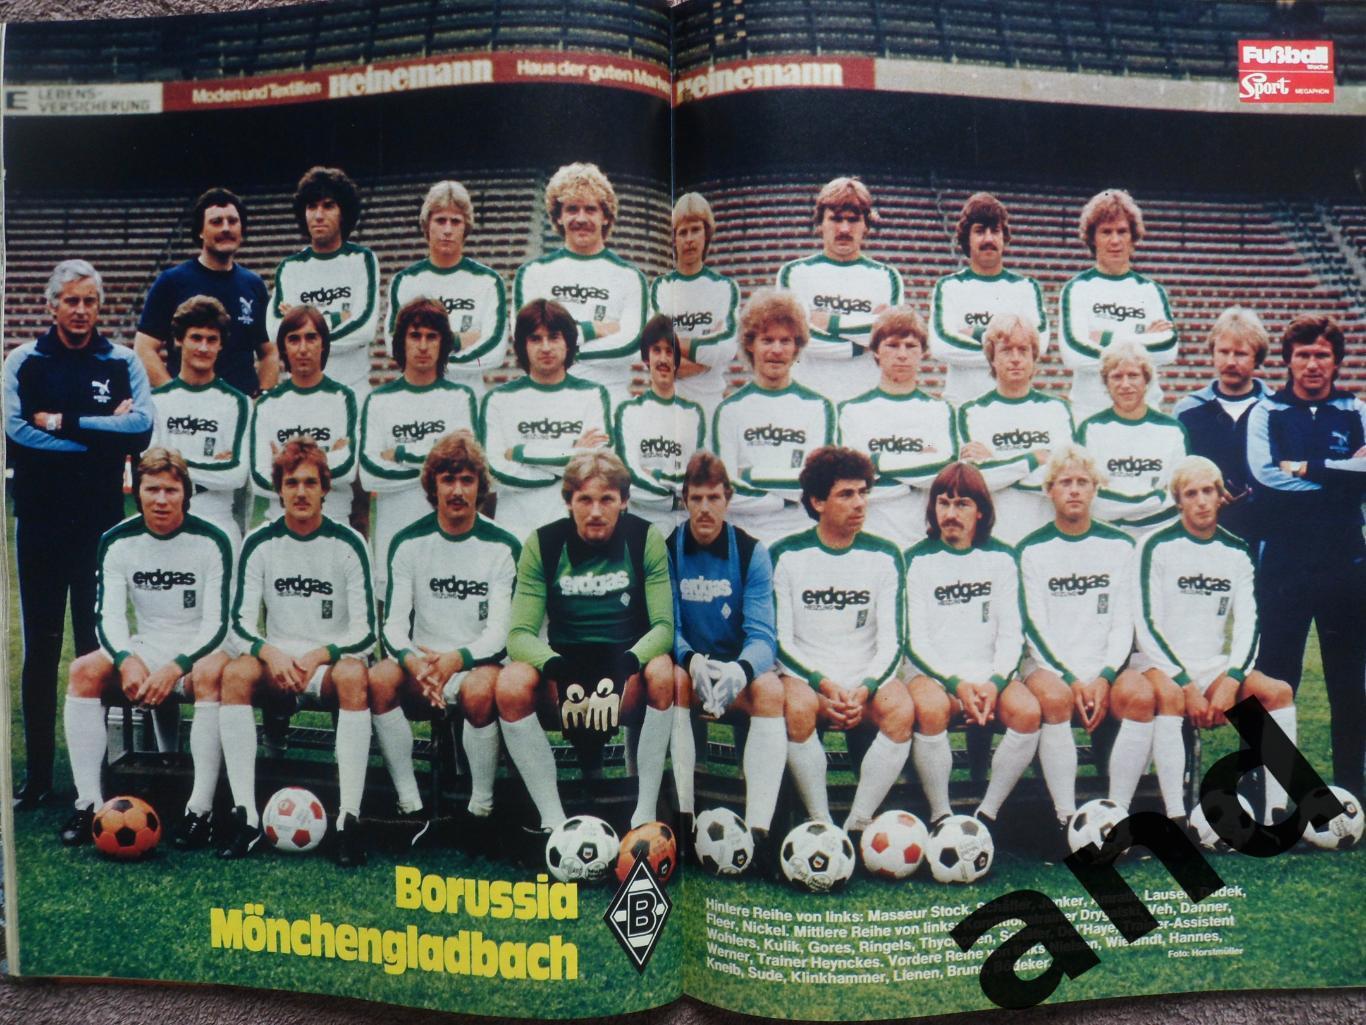 Спецвыпуск Бундеслига 1979/80 (большие постеры команд) уценка! 4